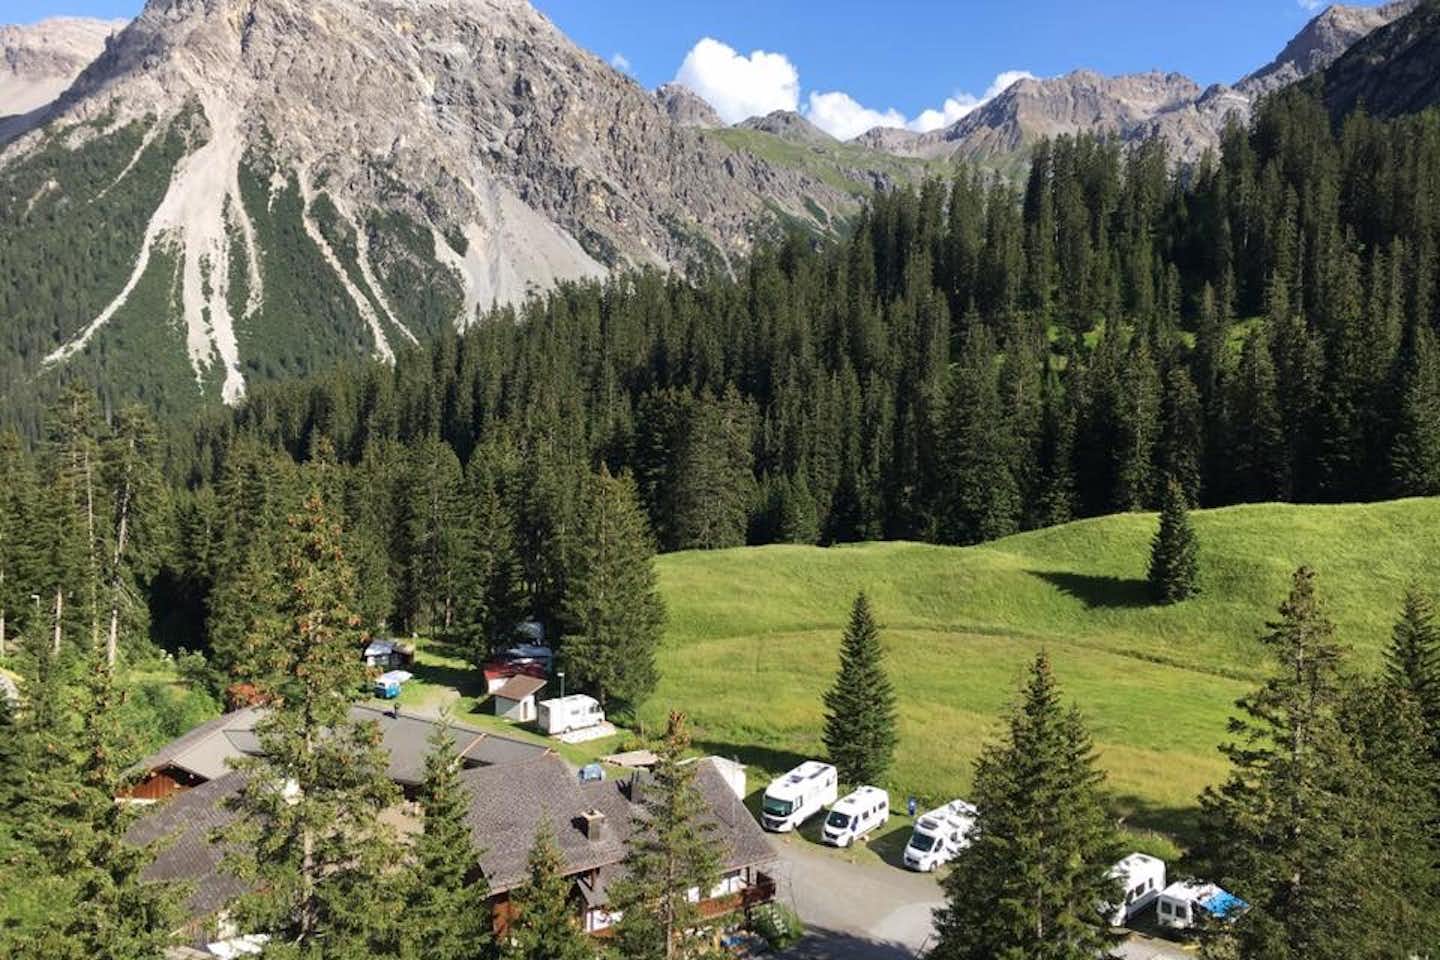 Camping Arosa  -  Campingplatz in den Alpen